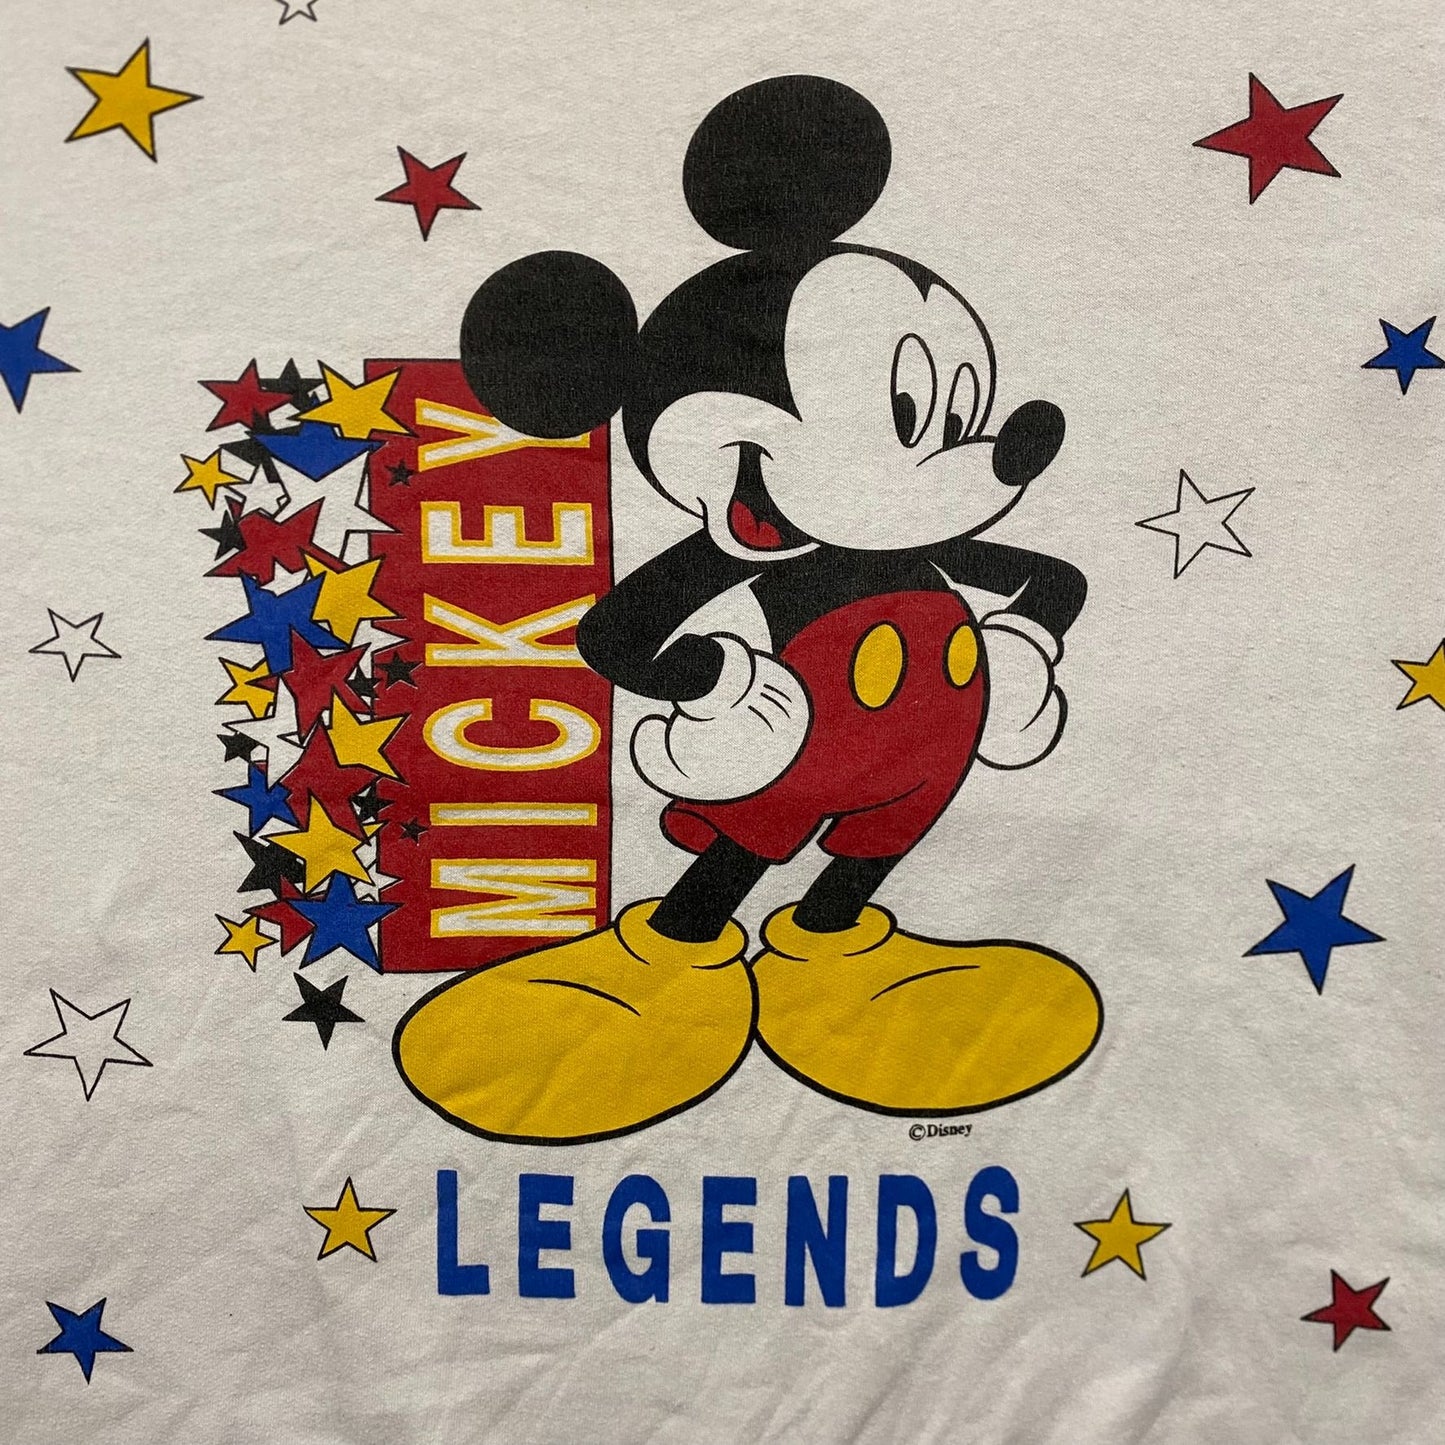 Vintage 80s Mickey Mouse Retro Disney Crewneck Sweatshirt